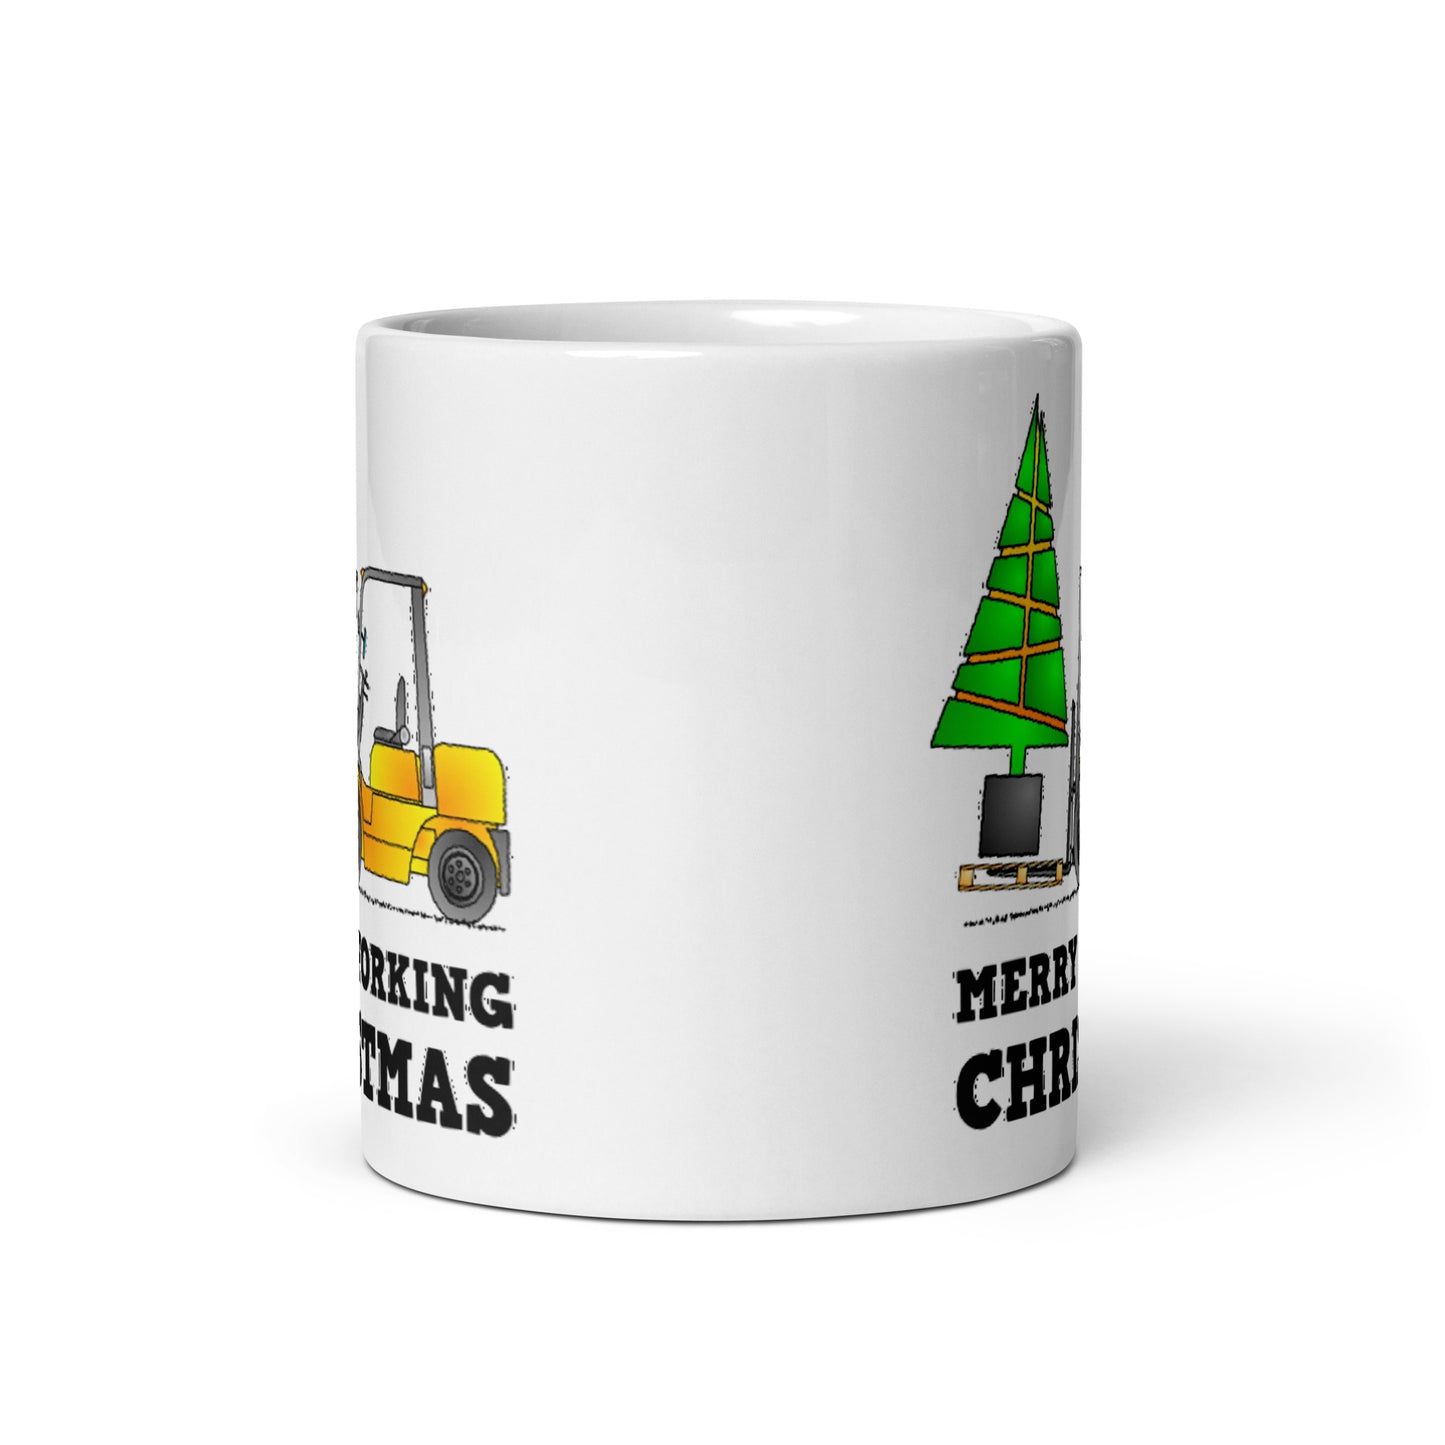 Merry Forking Christmas Mug